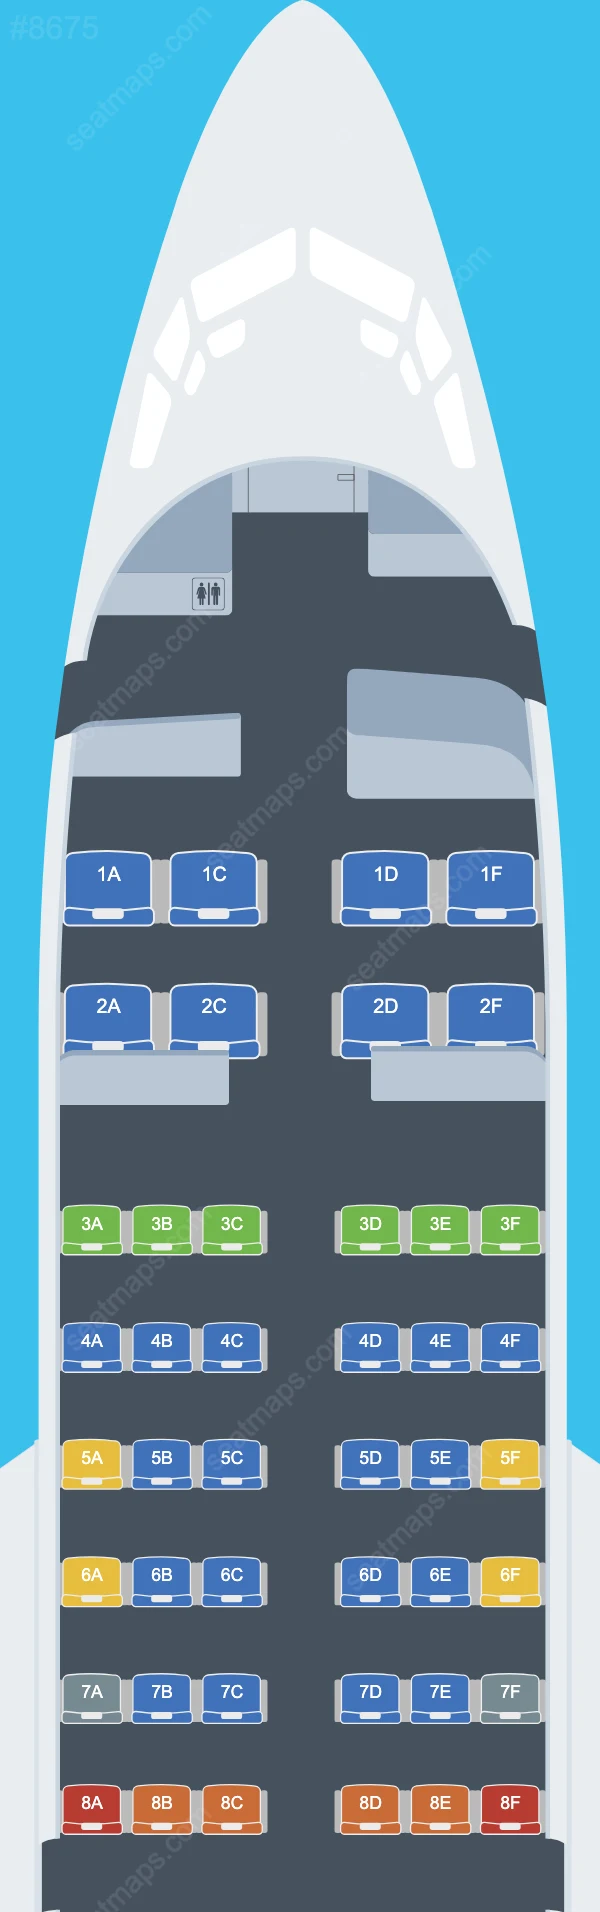 Схема салона Aero Contractors в самолете Boeing 737 737-500